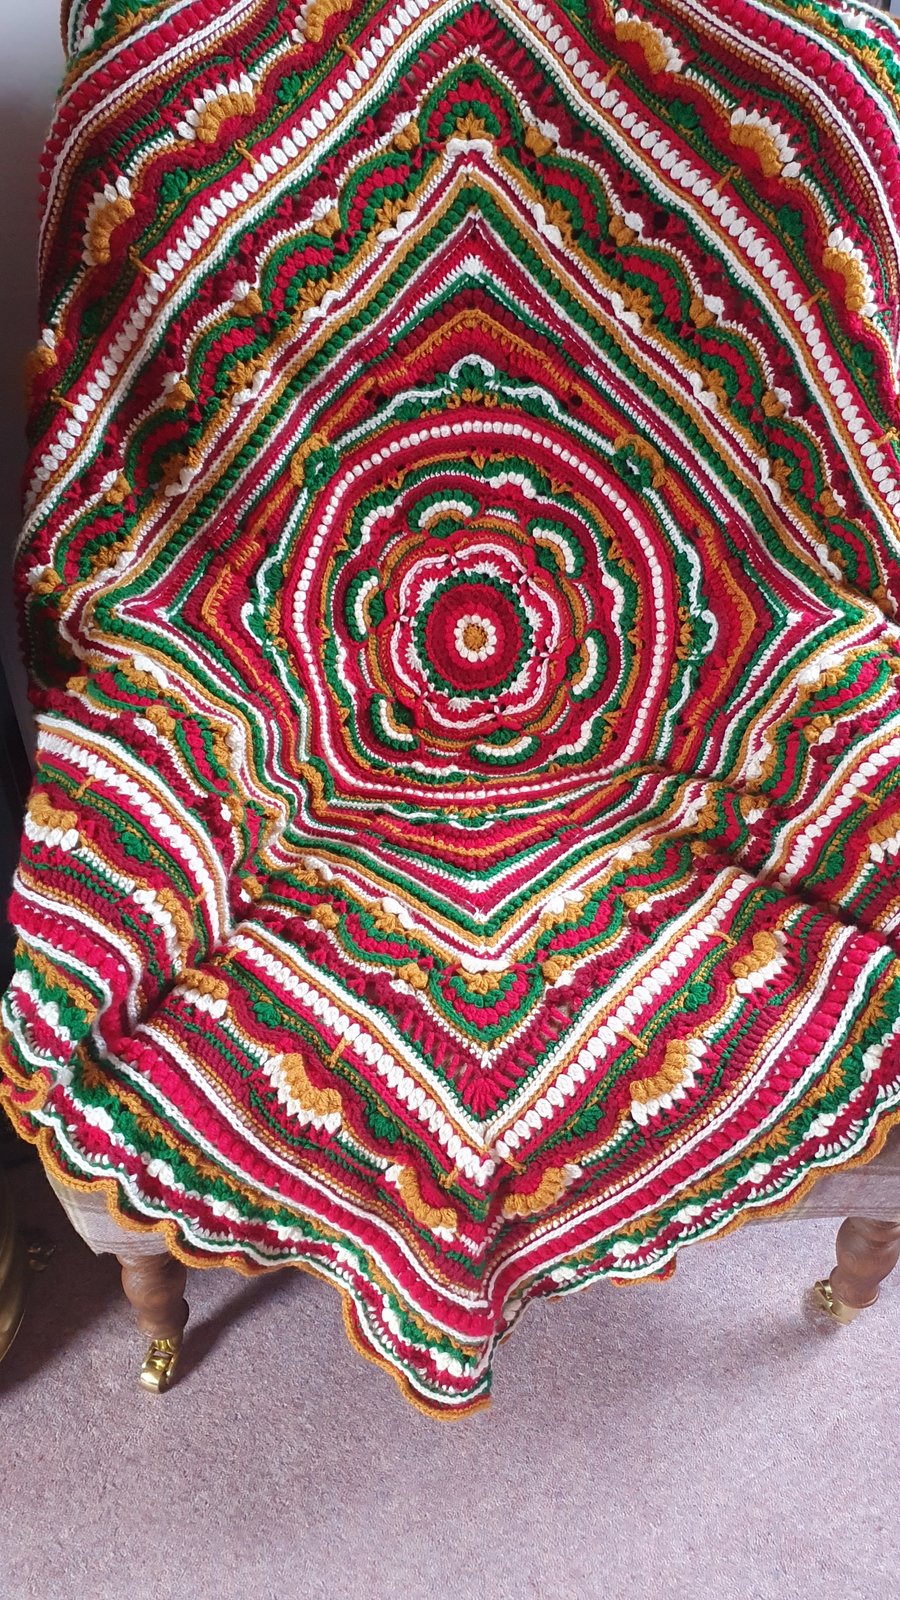 Crochet Blanket, Lapghan, Afghan, Throw. Handmade by me